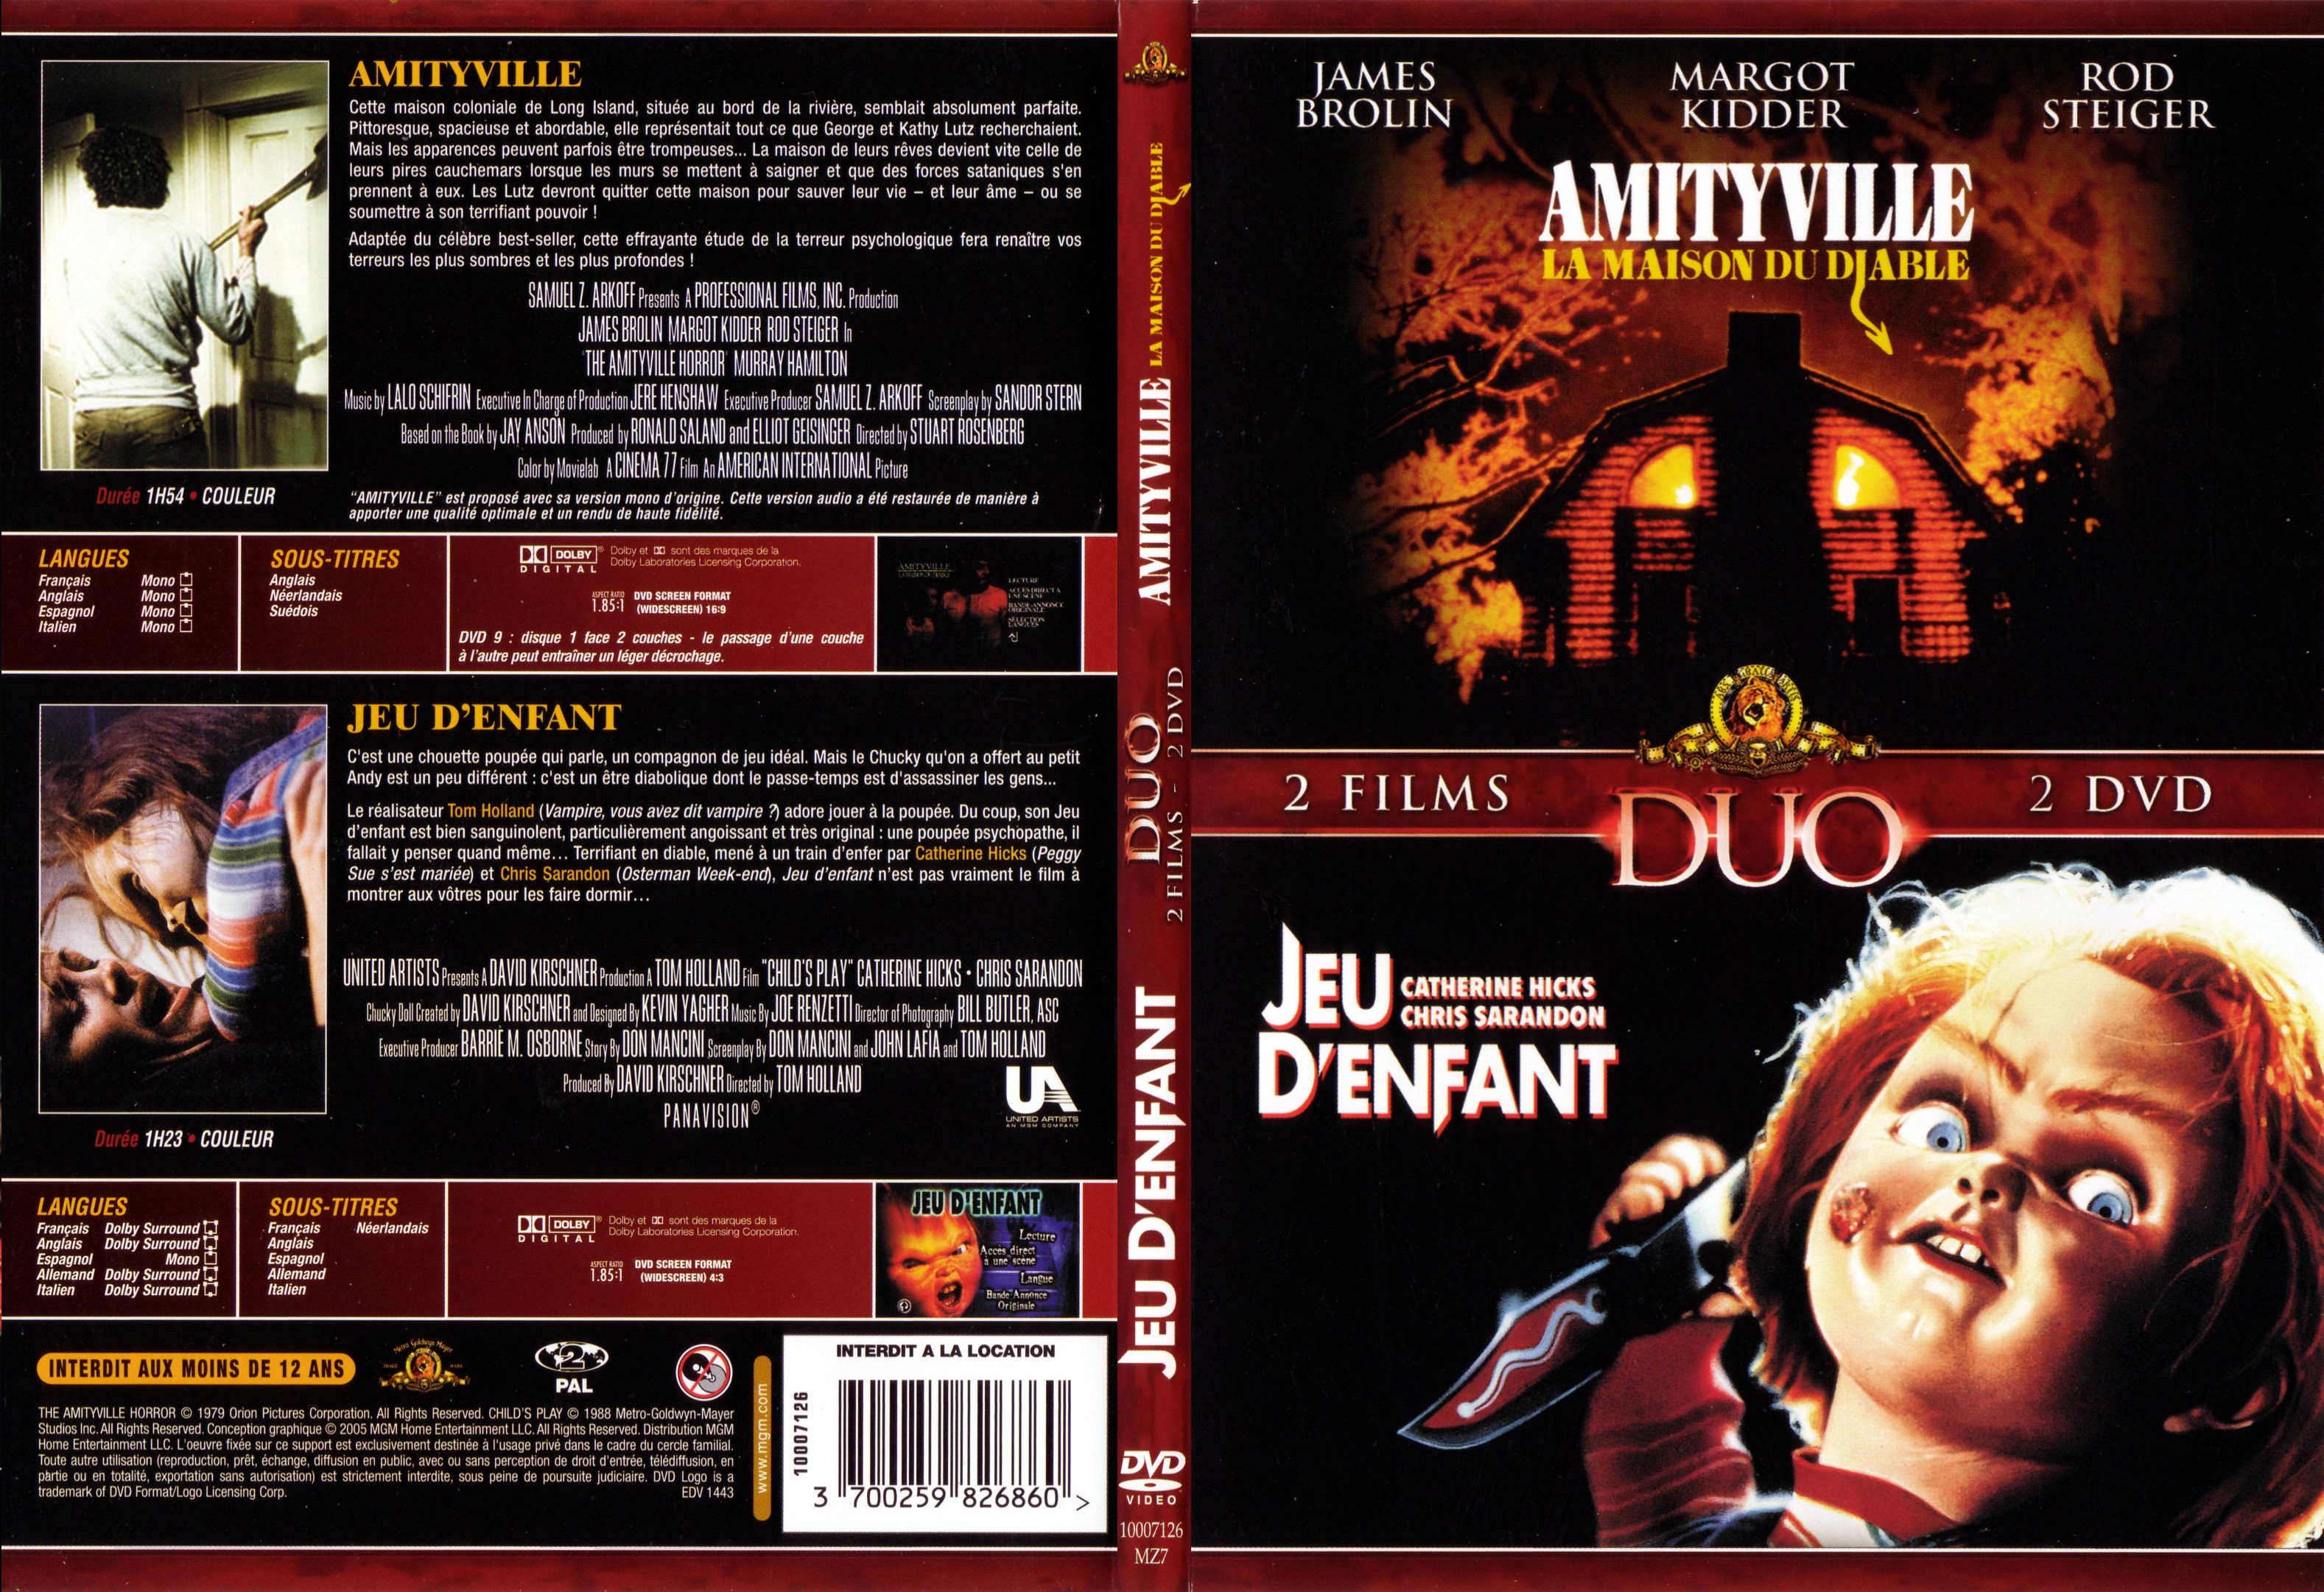 Jaquette DVD Amityville la maison du diable + Chucky Jeu d